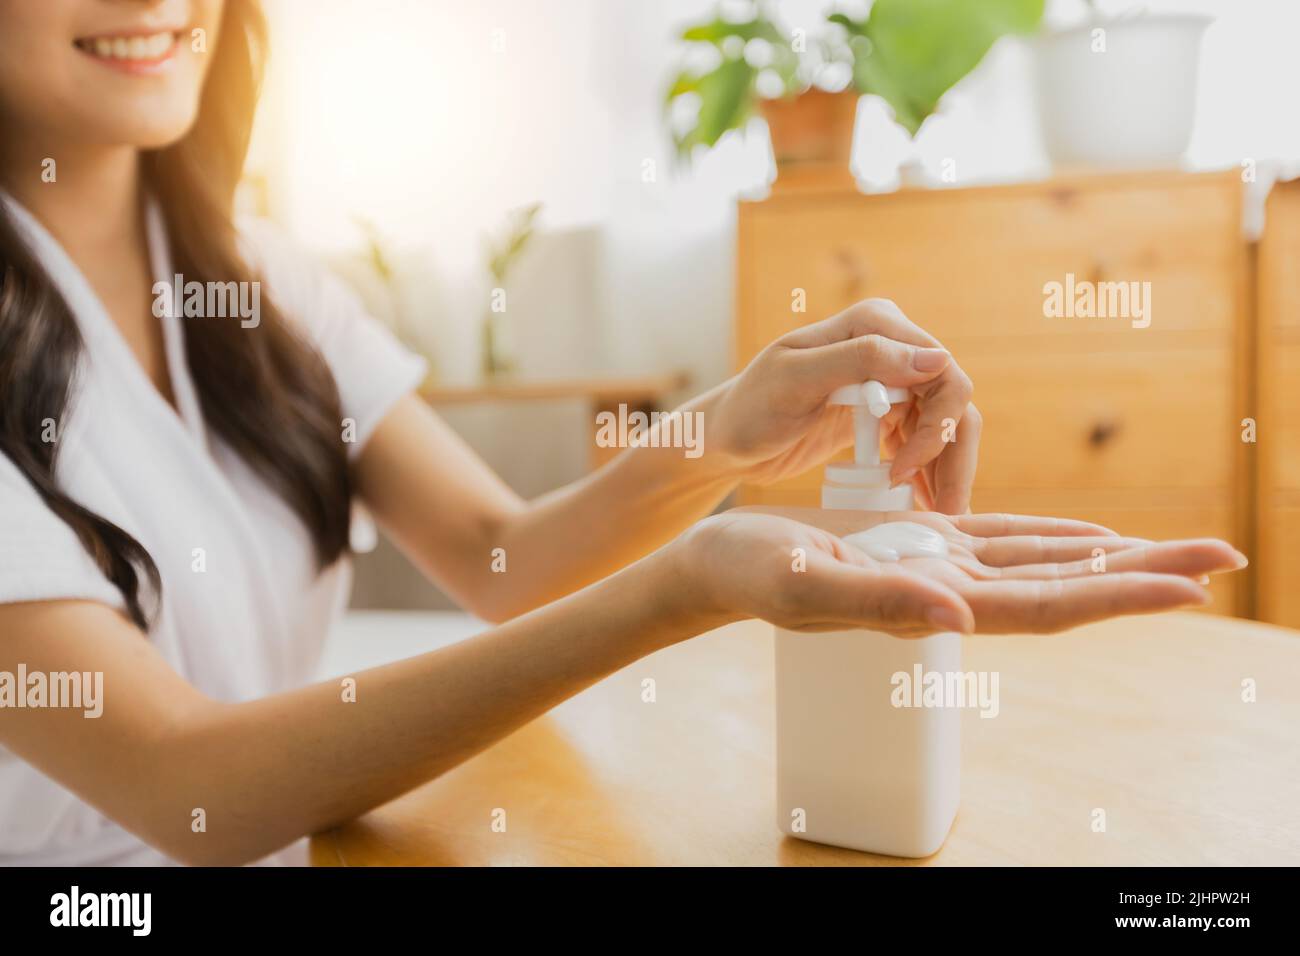 Gros plan de la main de la femme presser le flacon de crème de lotion pour la peau pour appliquer hydratant sur sa main, le traitement et les soins du corps Banque D'Images